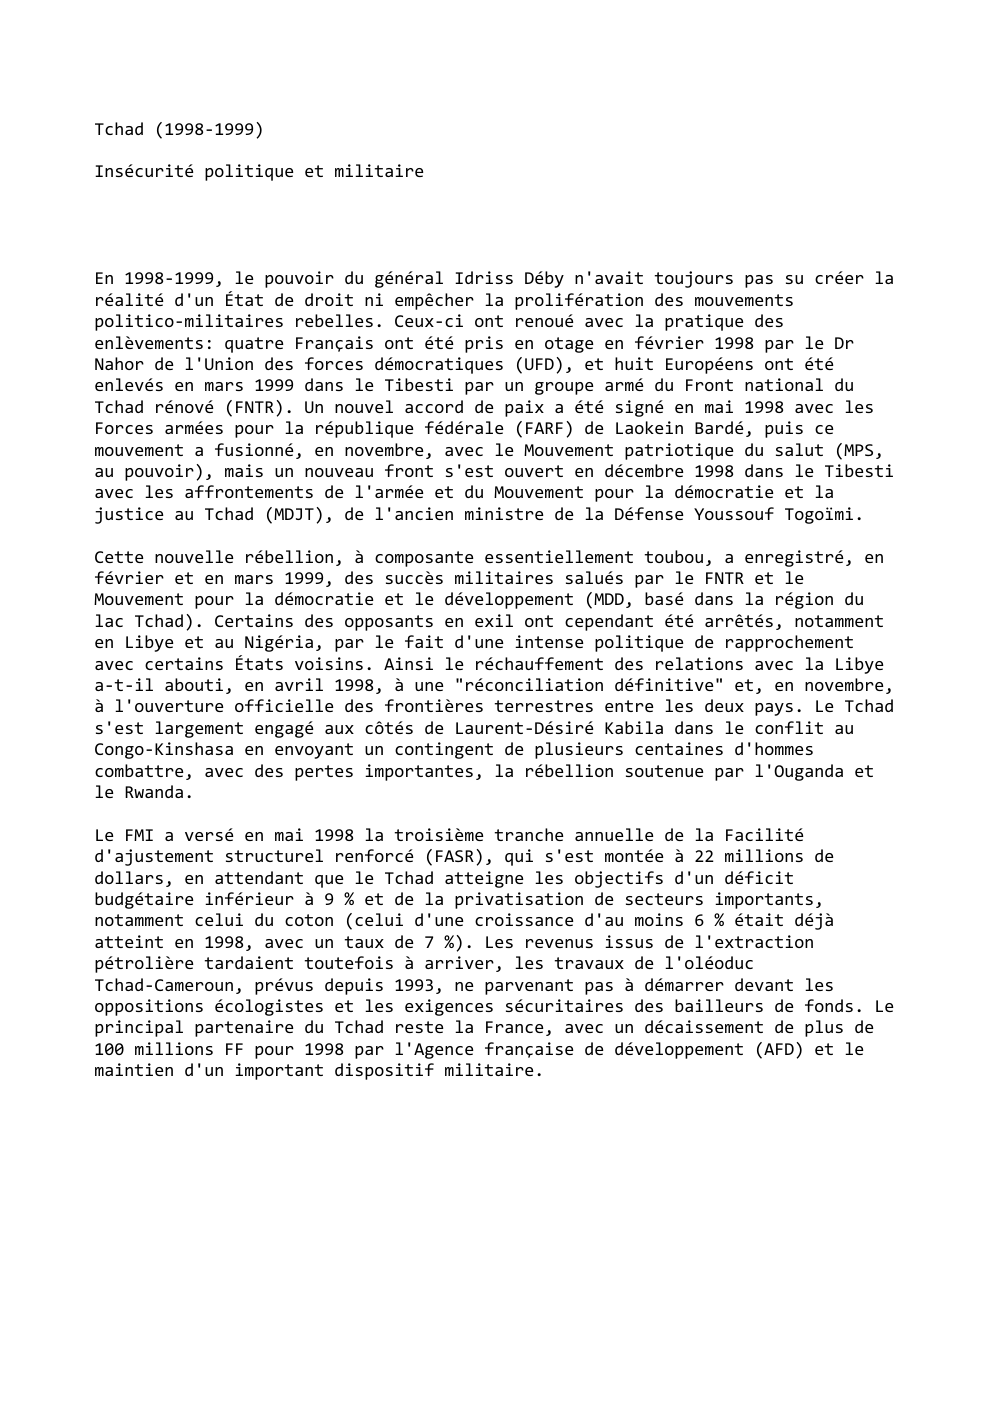 Prévisualisation du document Tchad (1998-1999)
Insécurité politique et militaire

En 1998-1999, le pouvoir du général Idriss Déby n'avait toujours pas su créer la...